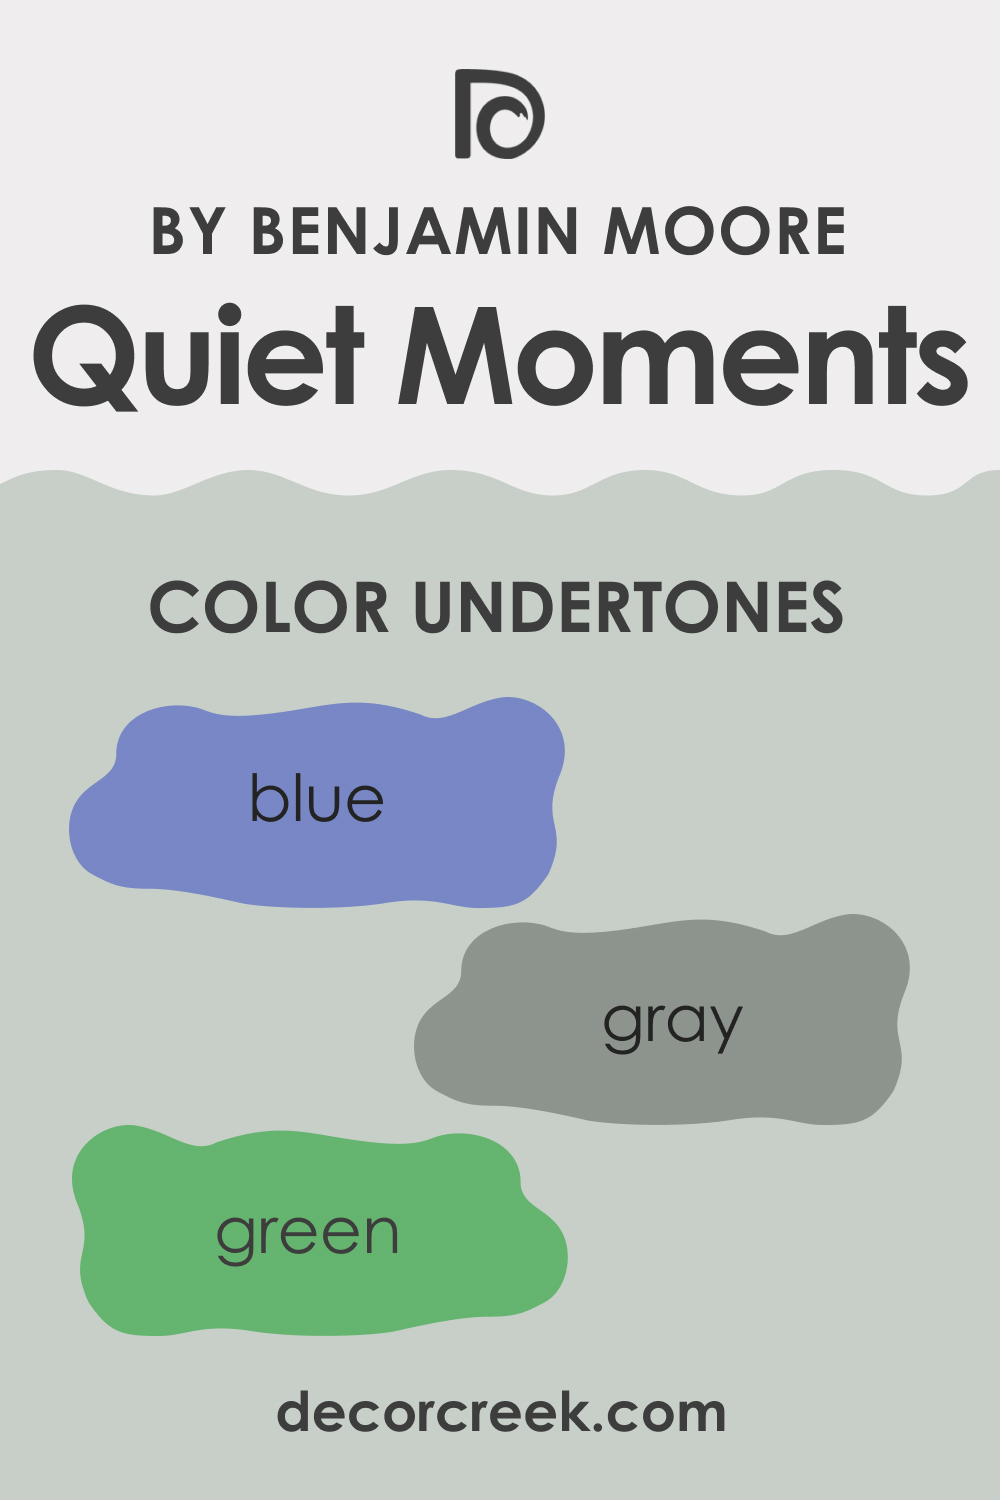 What Undertones Does BM 1563 Quiet Moments Have?